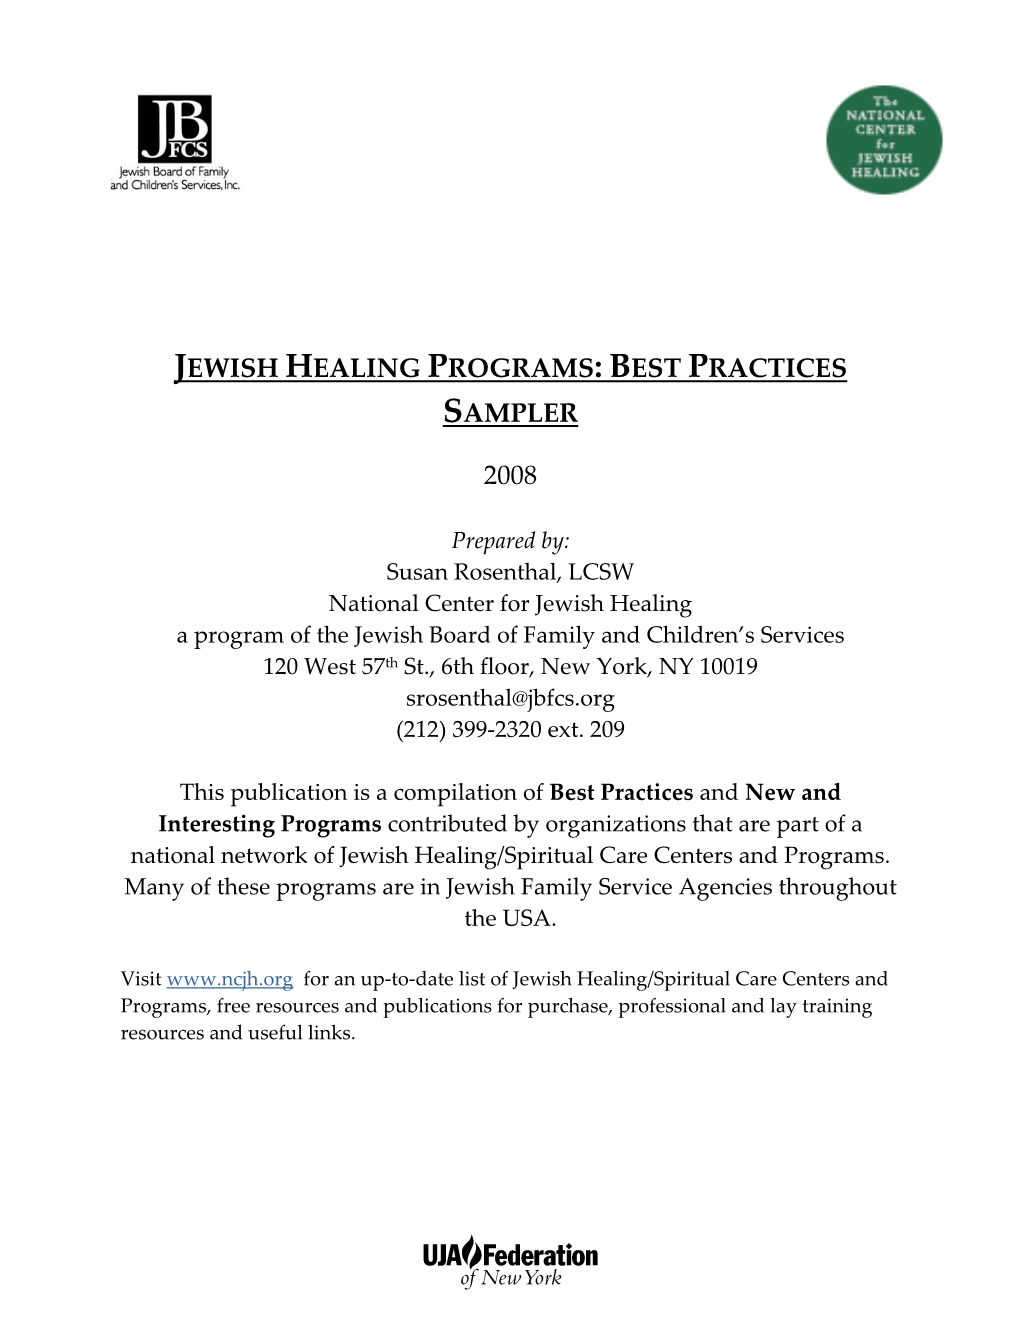 Jewish Healing Program: Best Practices